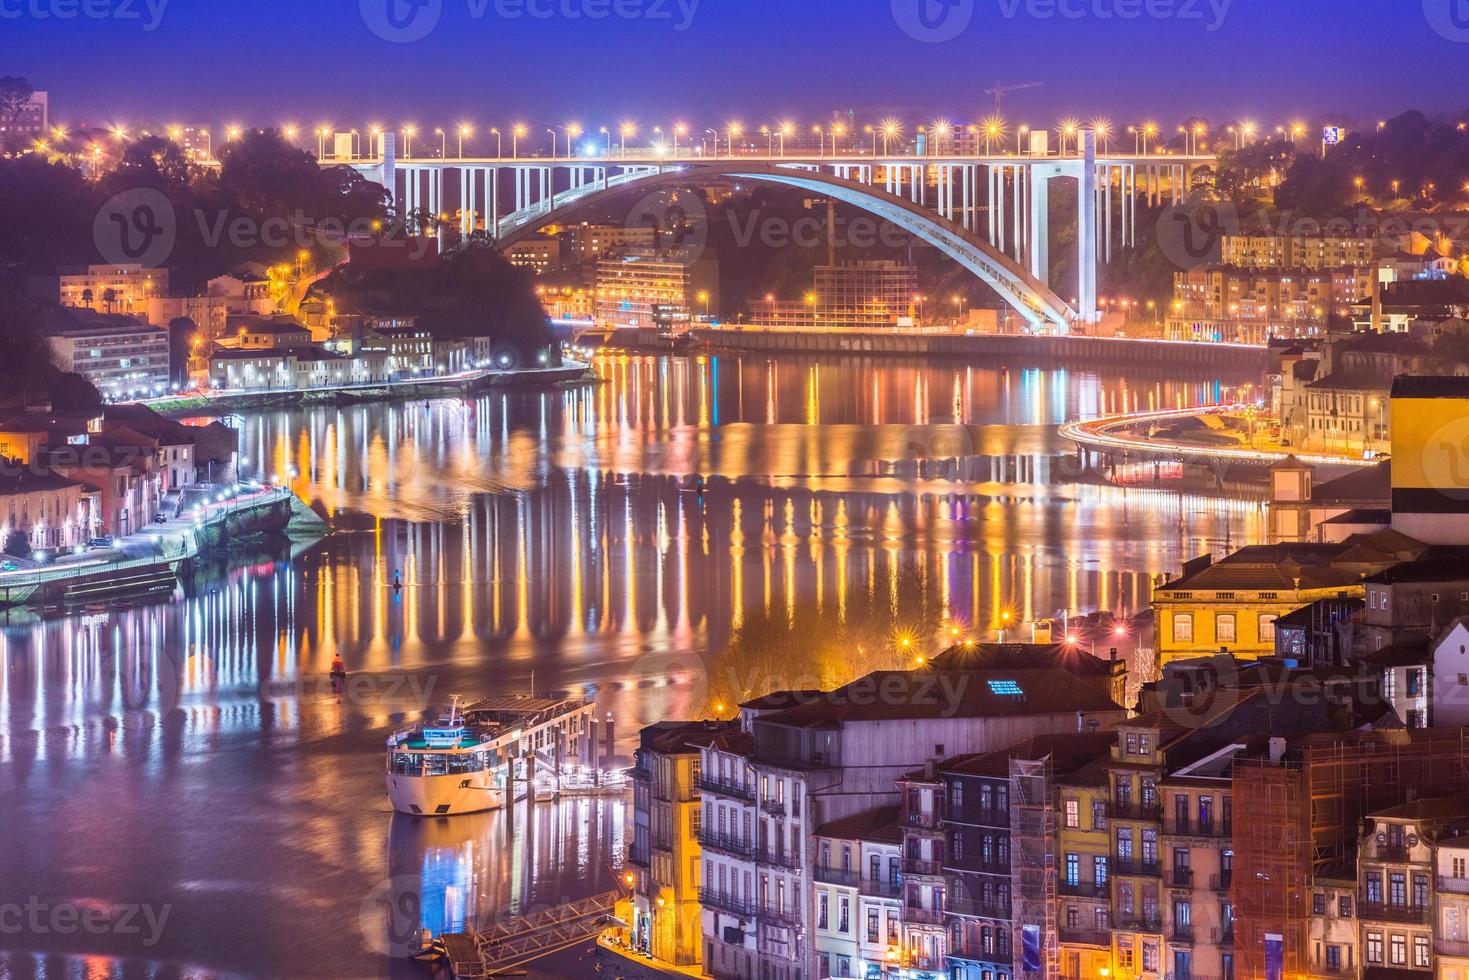 stadsbild av porto och arrabida-bron - ponte da arrabida på natten, dalen av dourofloden, portugal foto